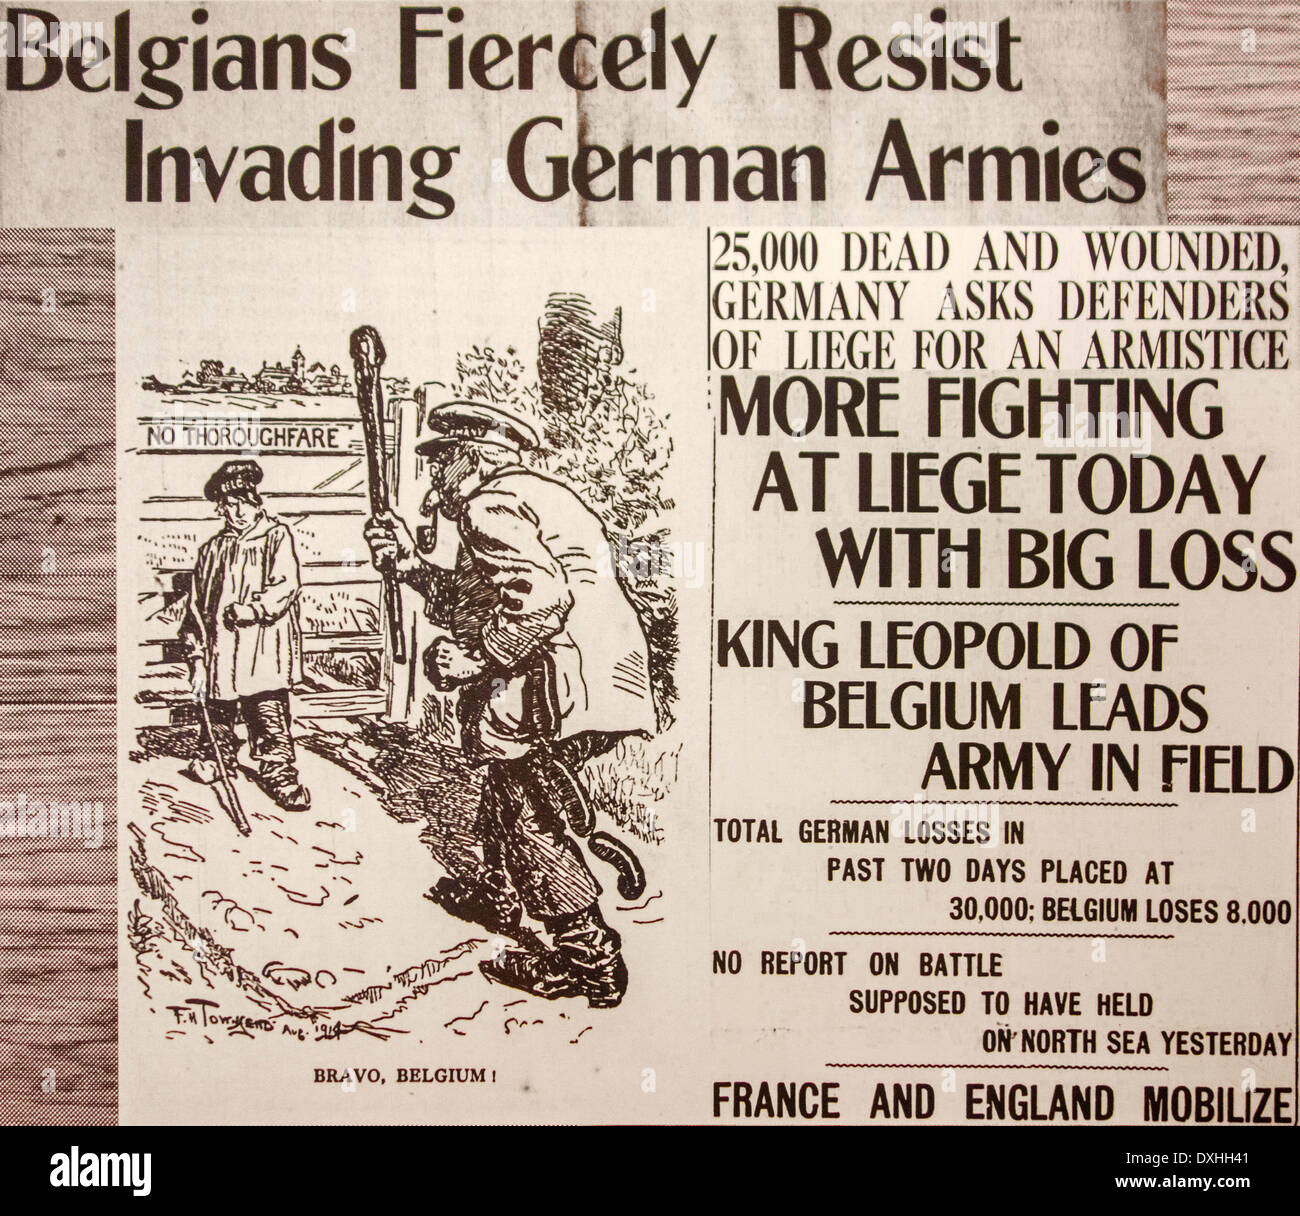 Britische Ww1 Zeitungsartikel Mit Cartoon In Englische Zeitung Berichterstattung Uber Den Ersten Weltkrieg Eine Front In Belgien Stockfotografie Alamy